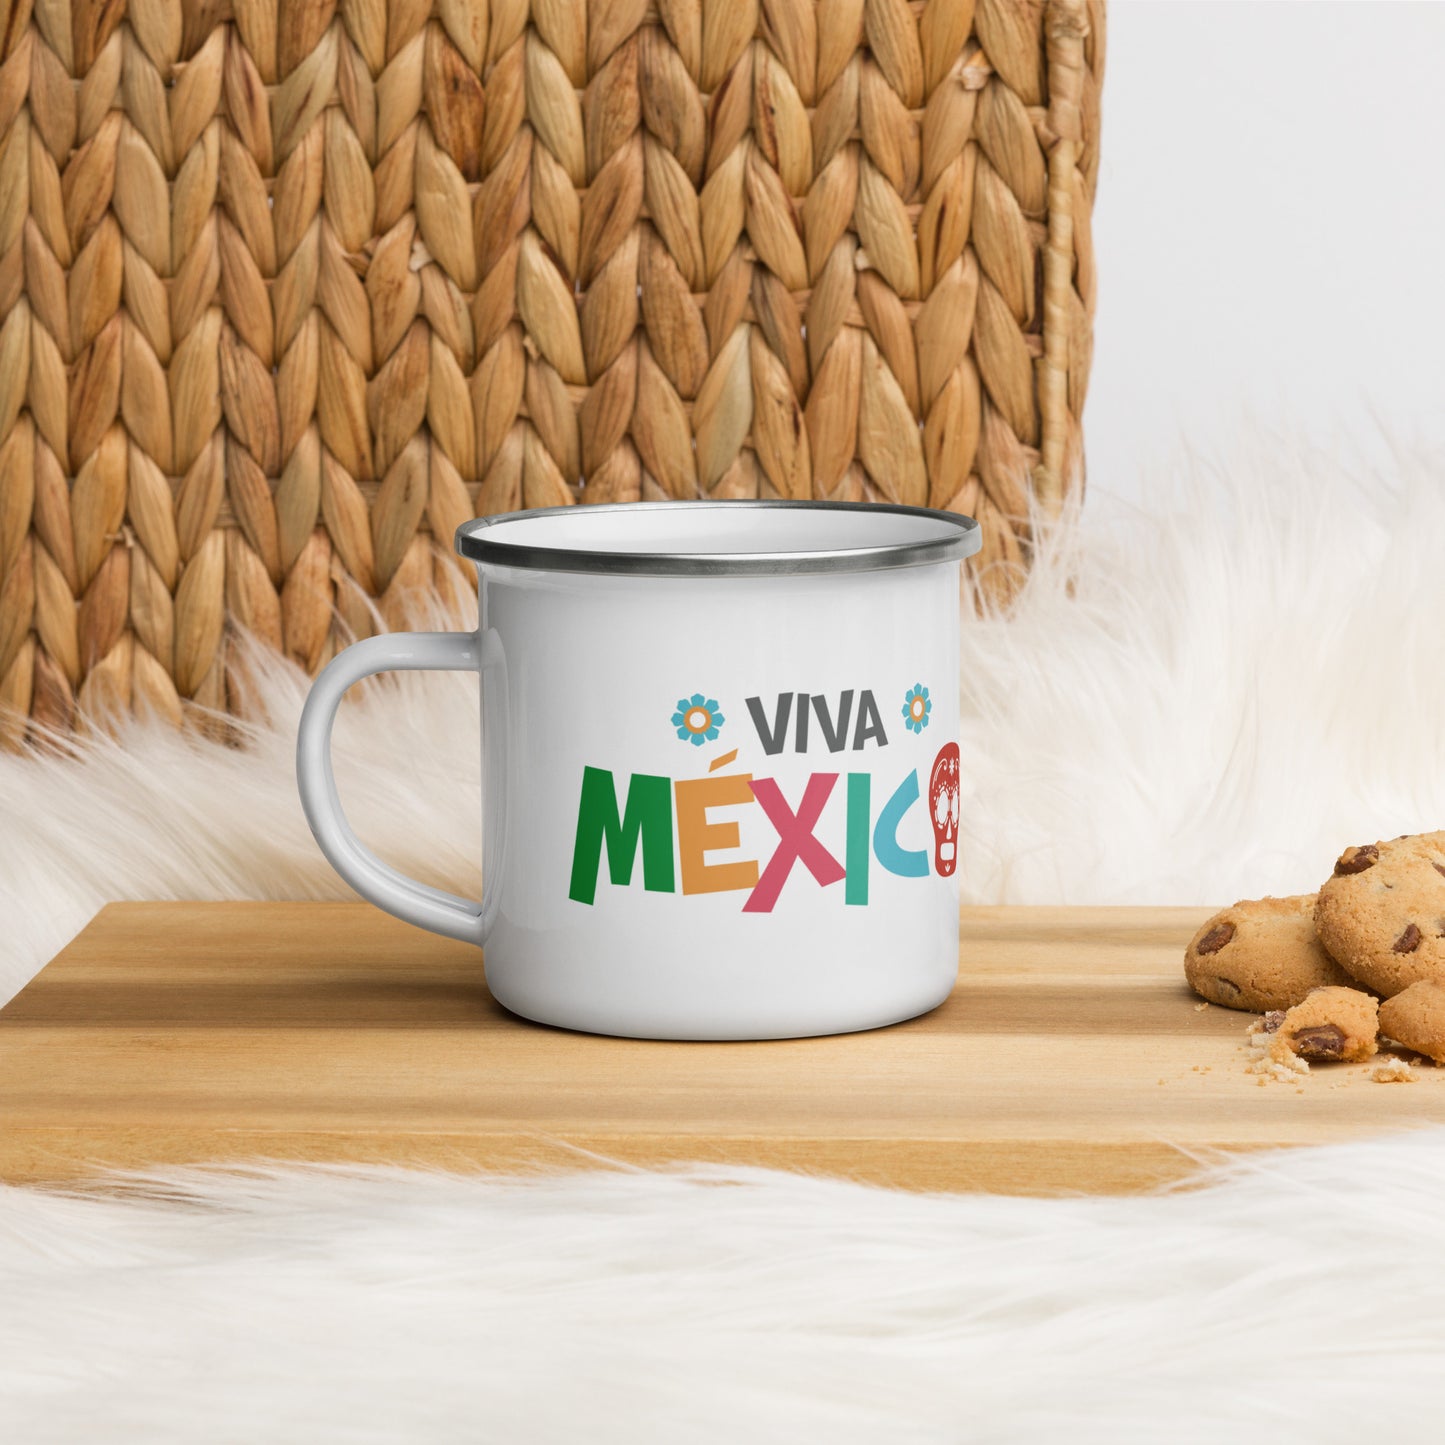 Viva Mexico Mug